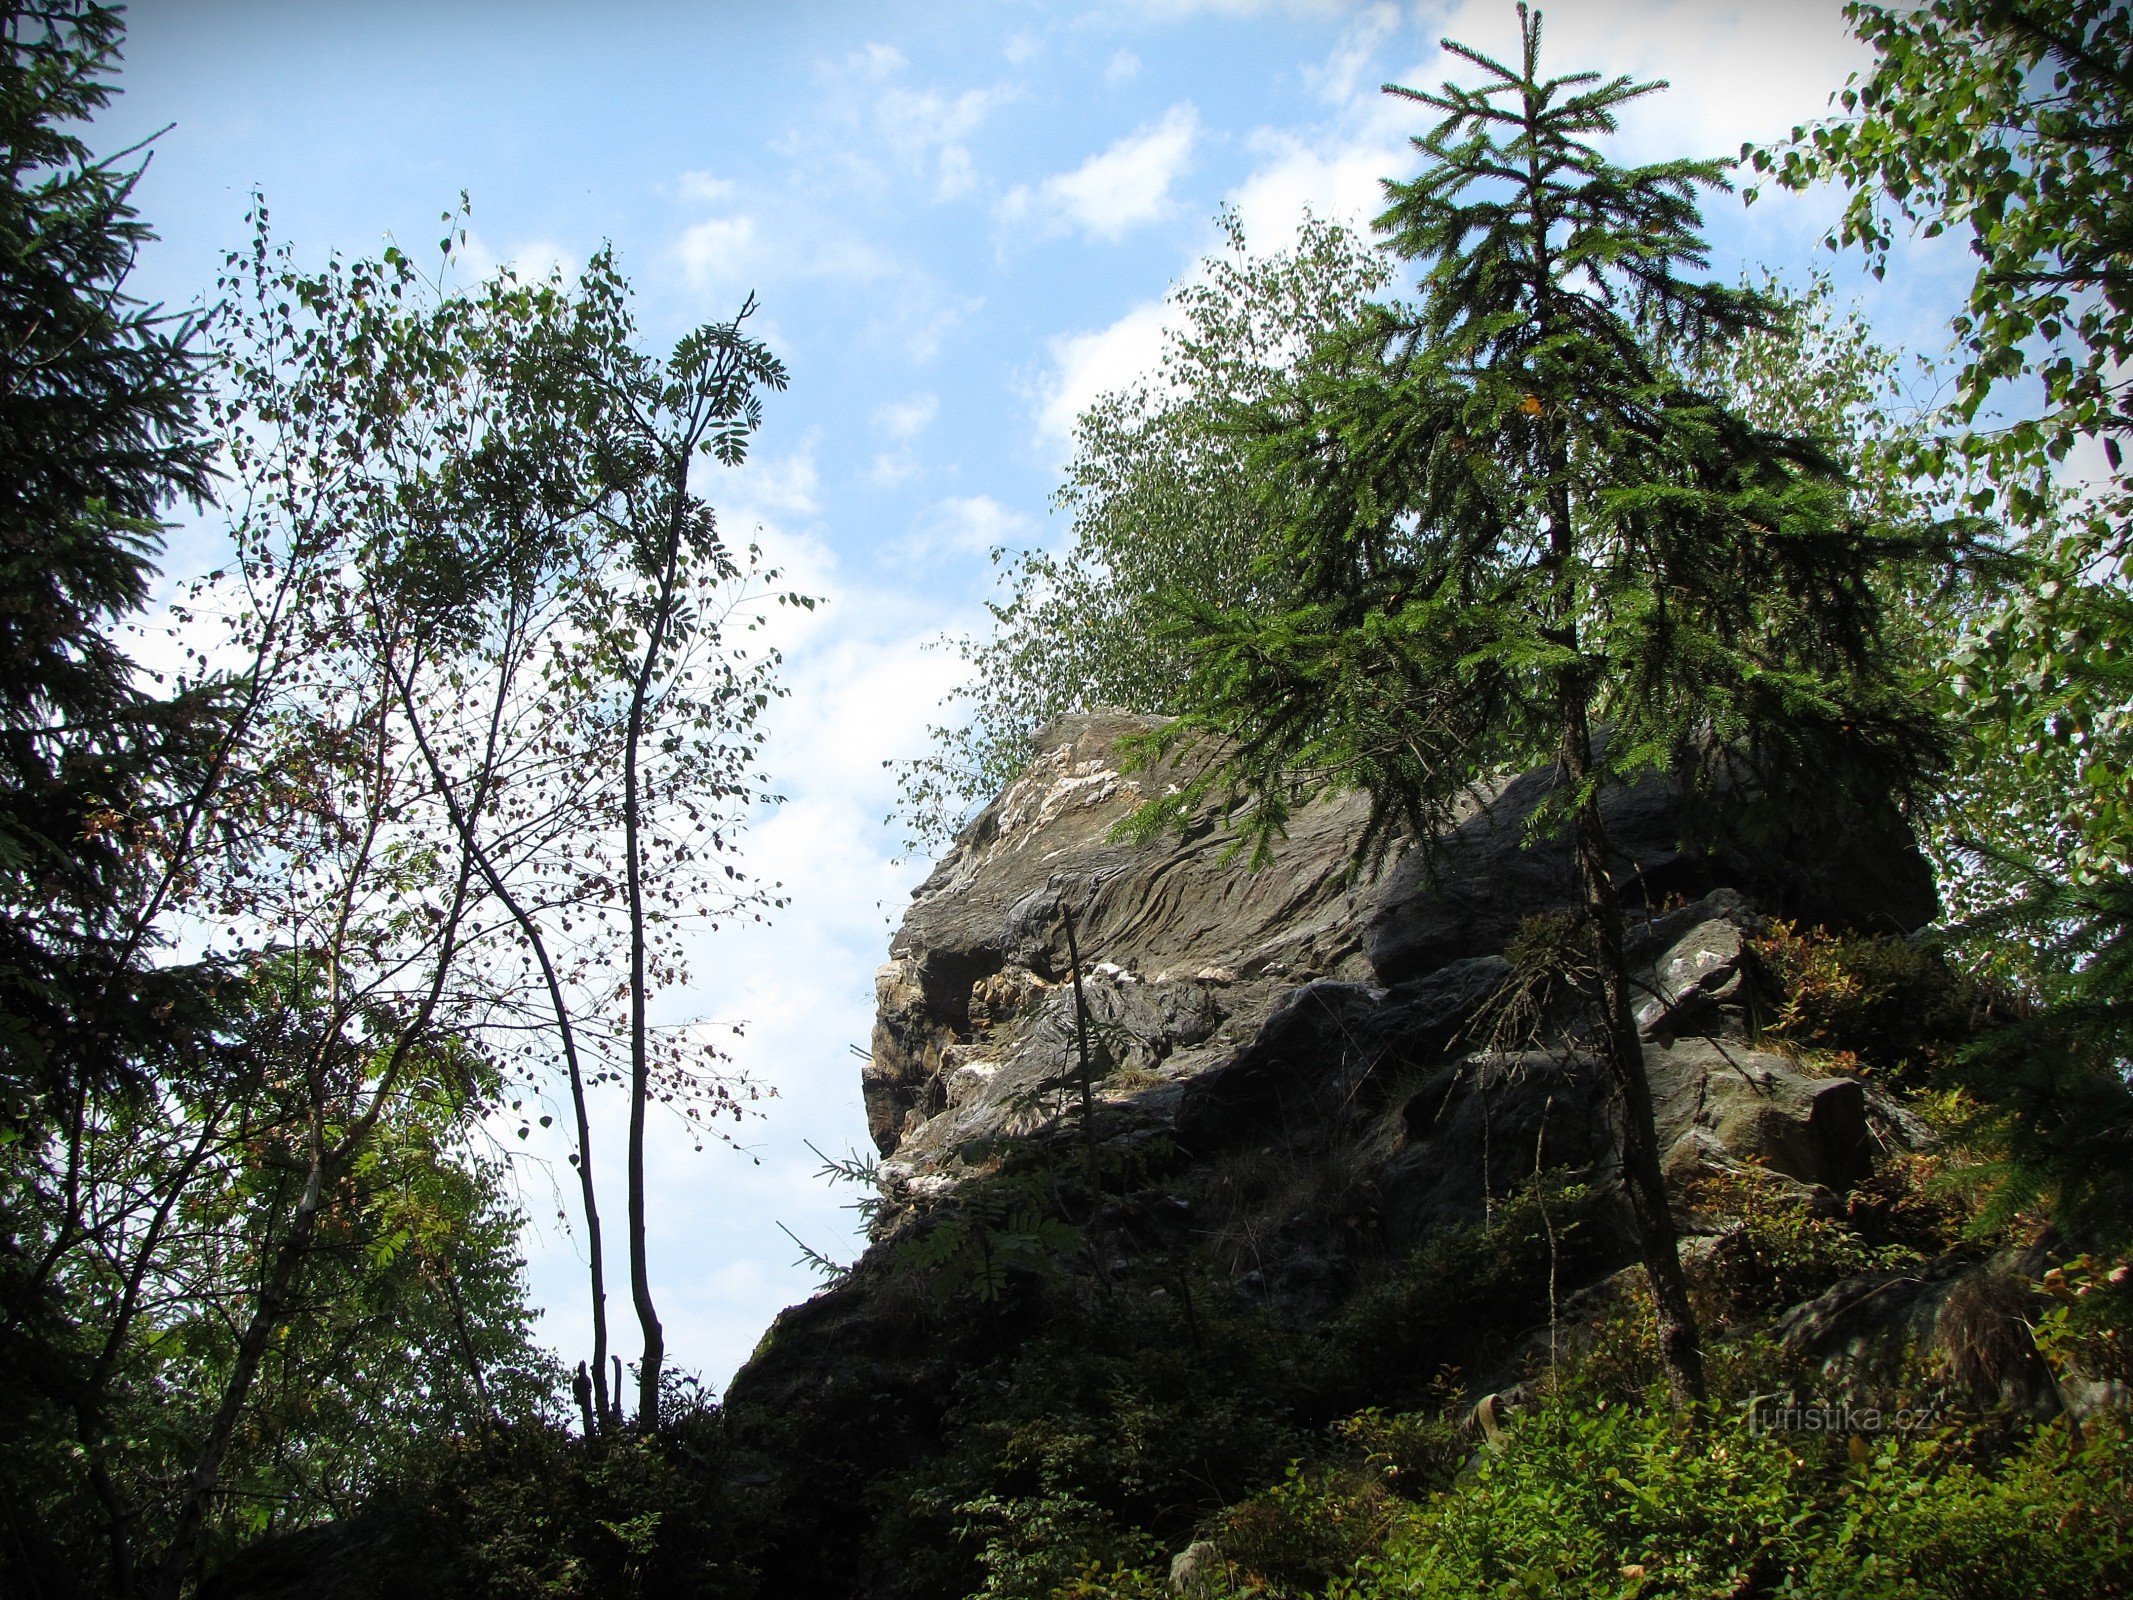 Krtincen kalliot lähellä Skrítekiä